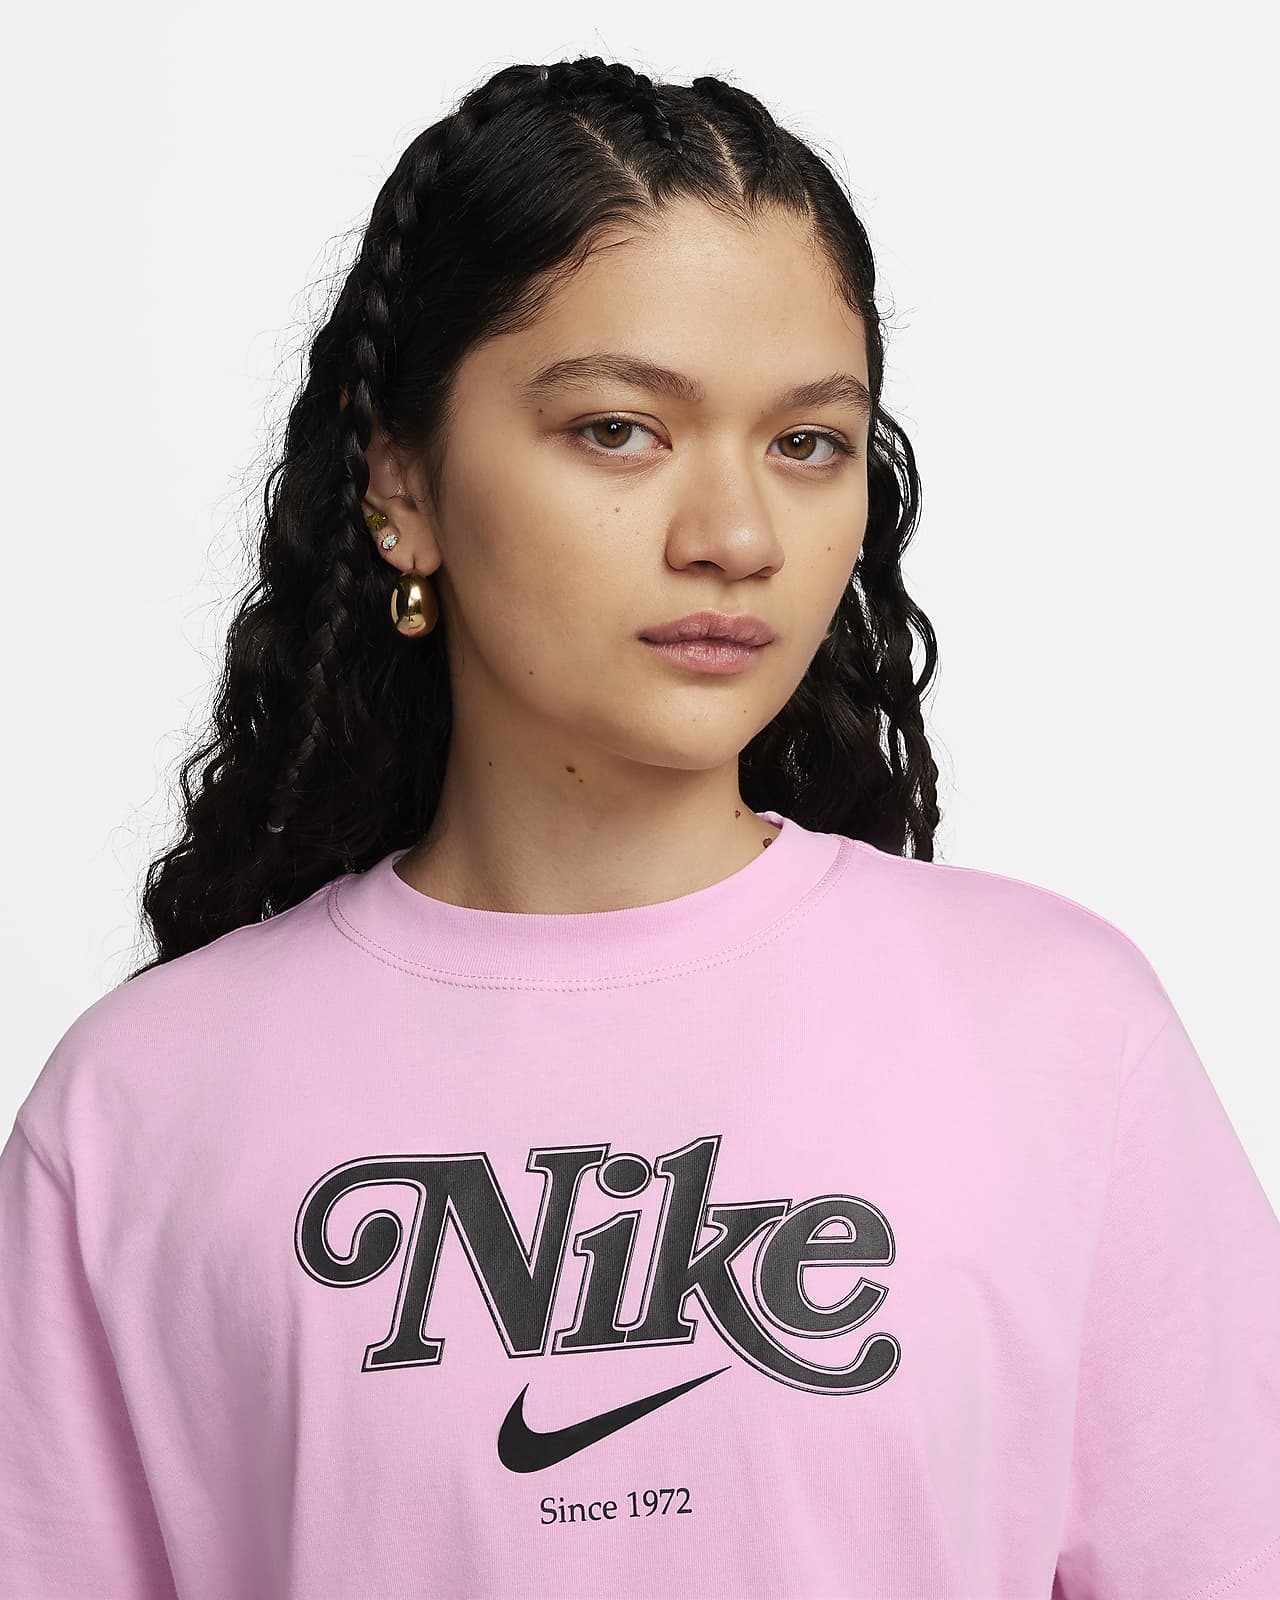 Women's T-Shirts Nike Longline Sportswear